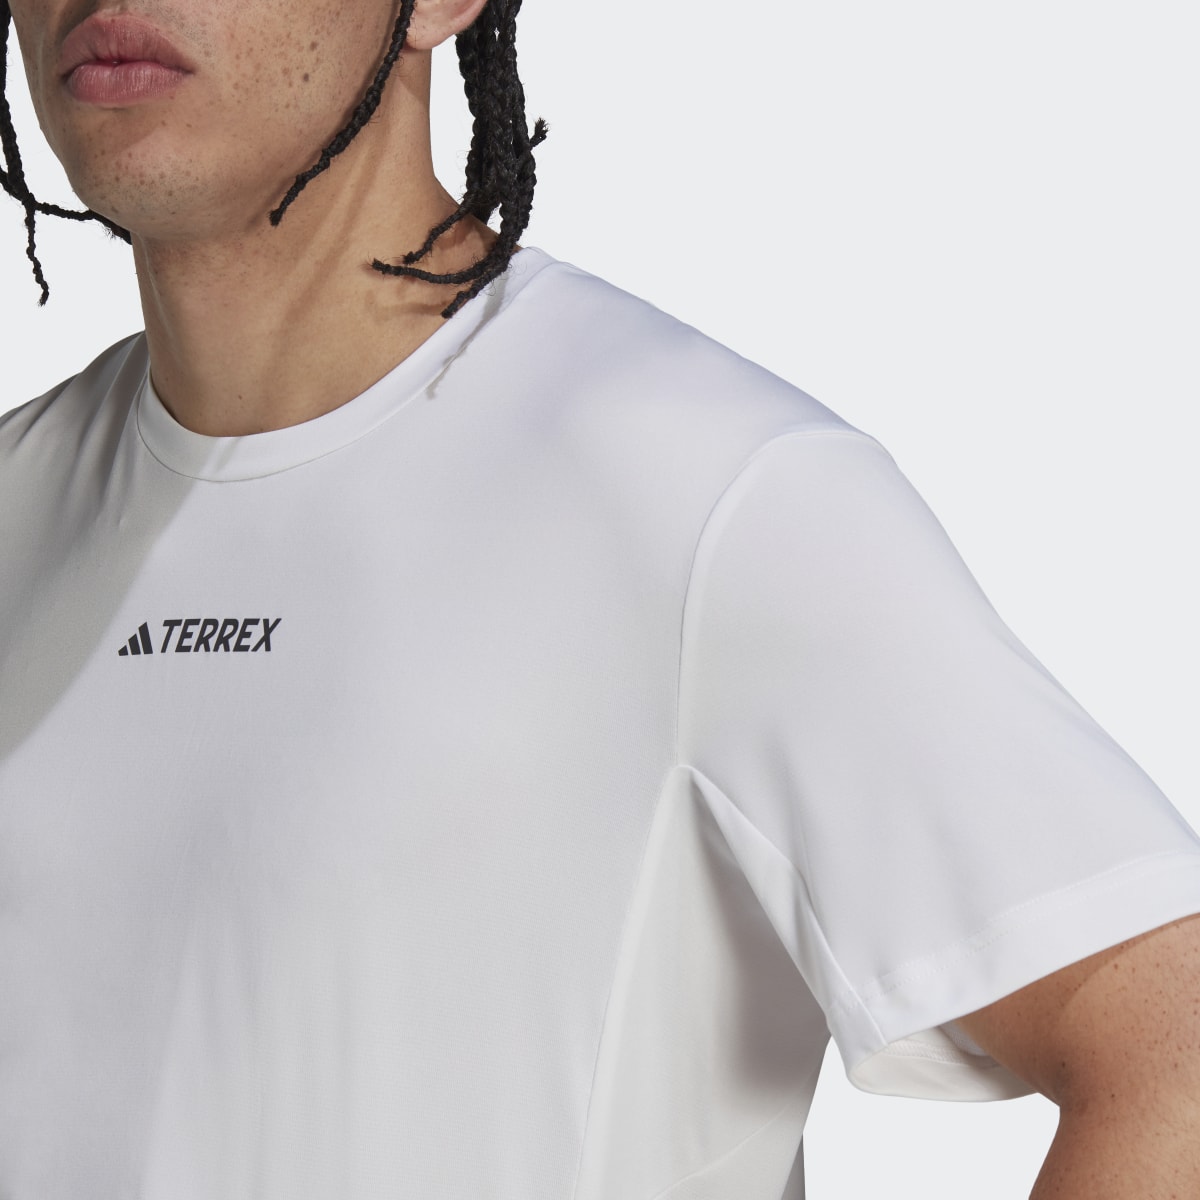 Adidas Terrex Multi T-Shirt. 7